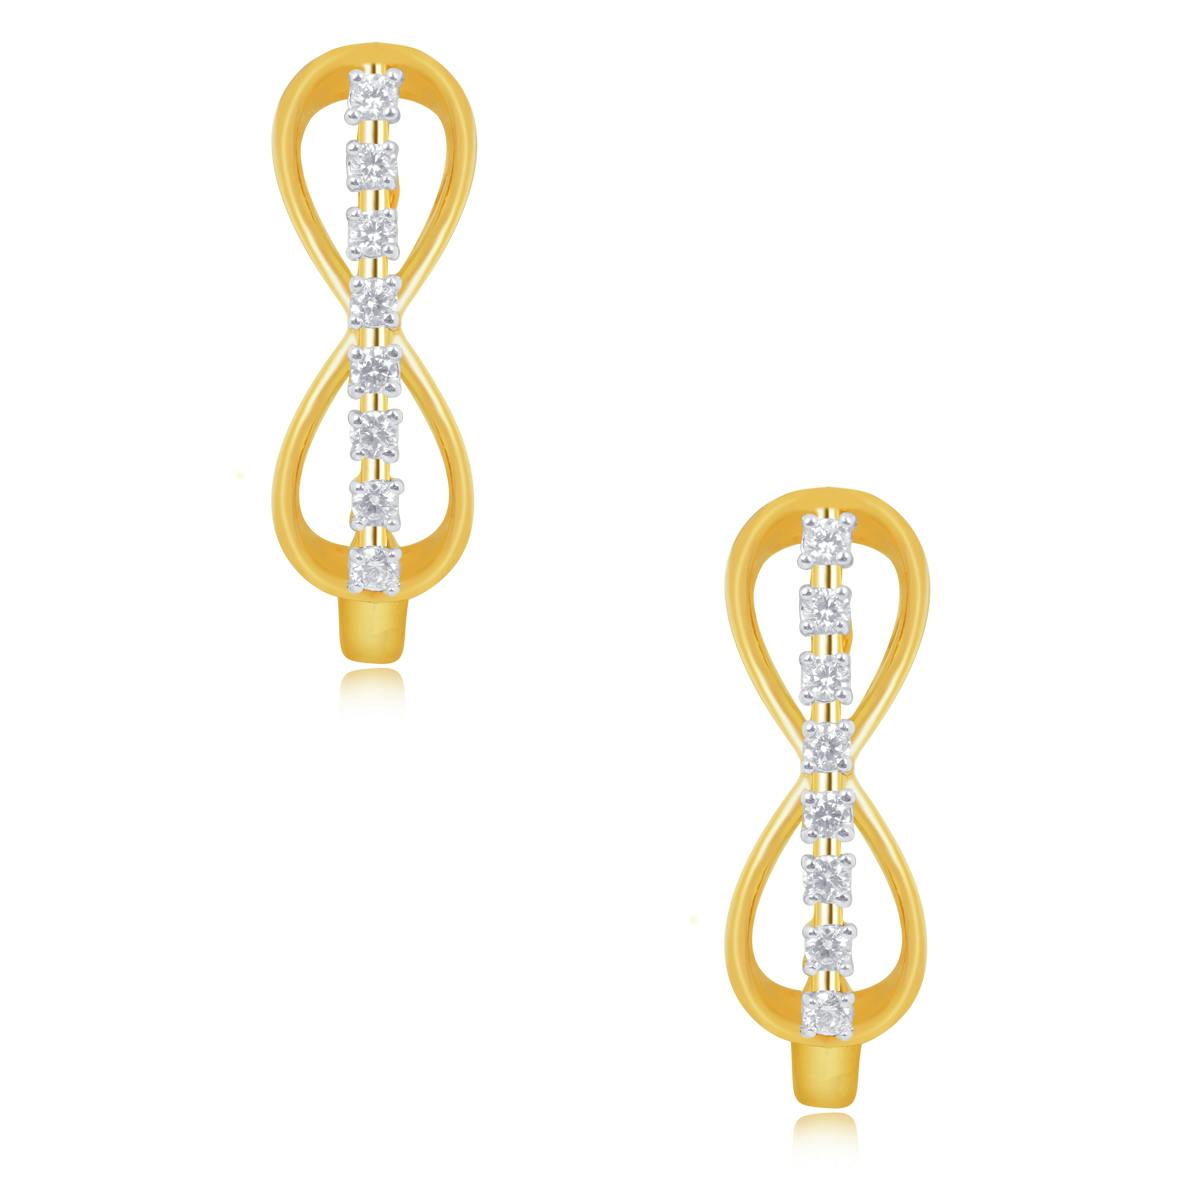 Savannah diamond earrings